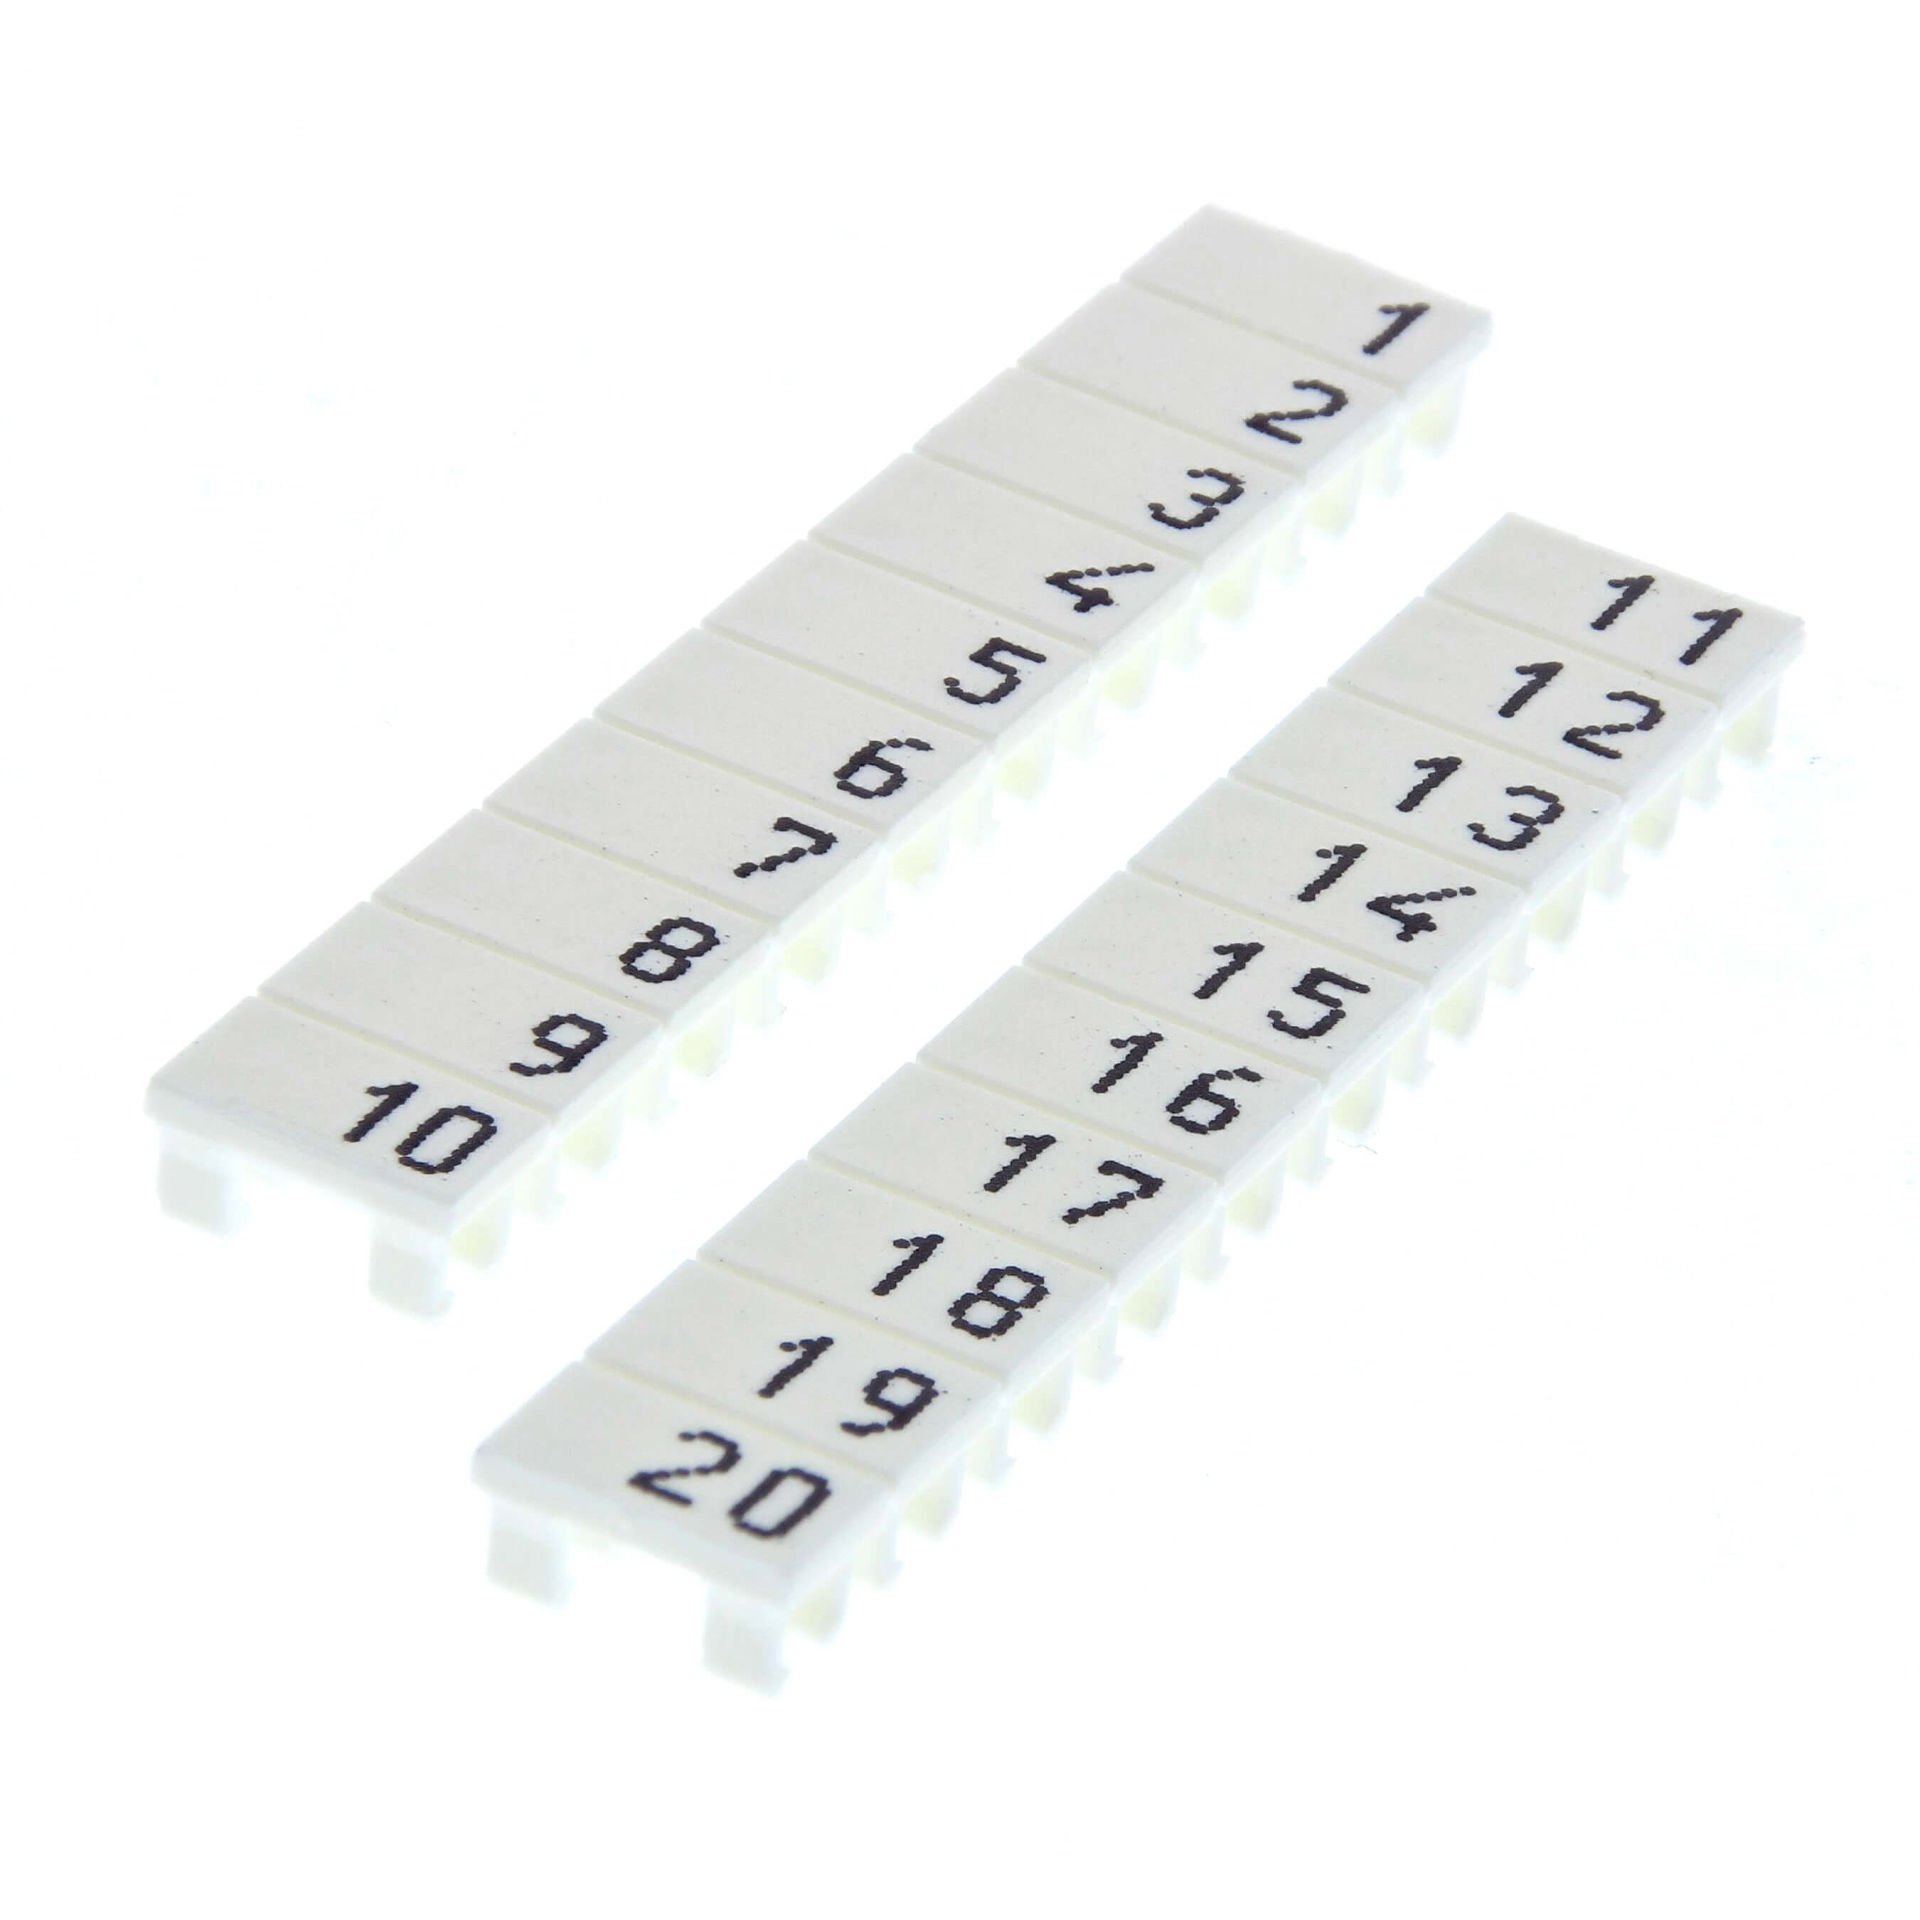 Omron - XW5Z-S6.0LB-11-20  Yazılı plastik etiket, 6.0 mm² vidalı klemens ile uyumlu, 10 adet, 11-20